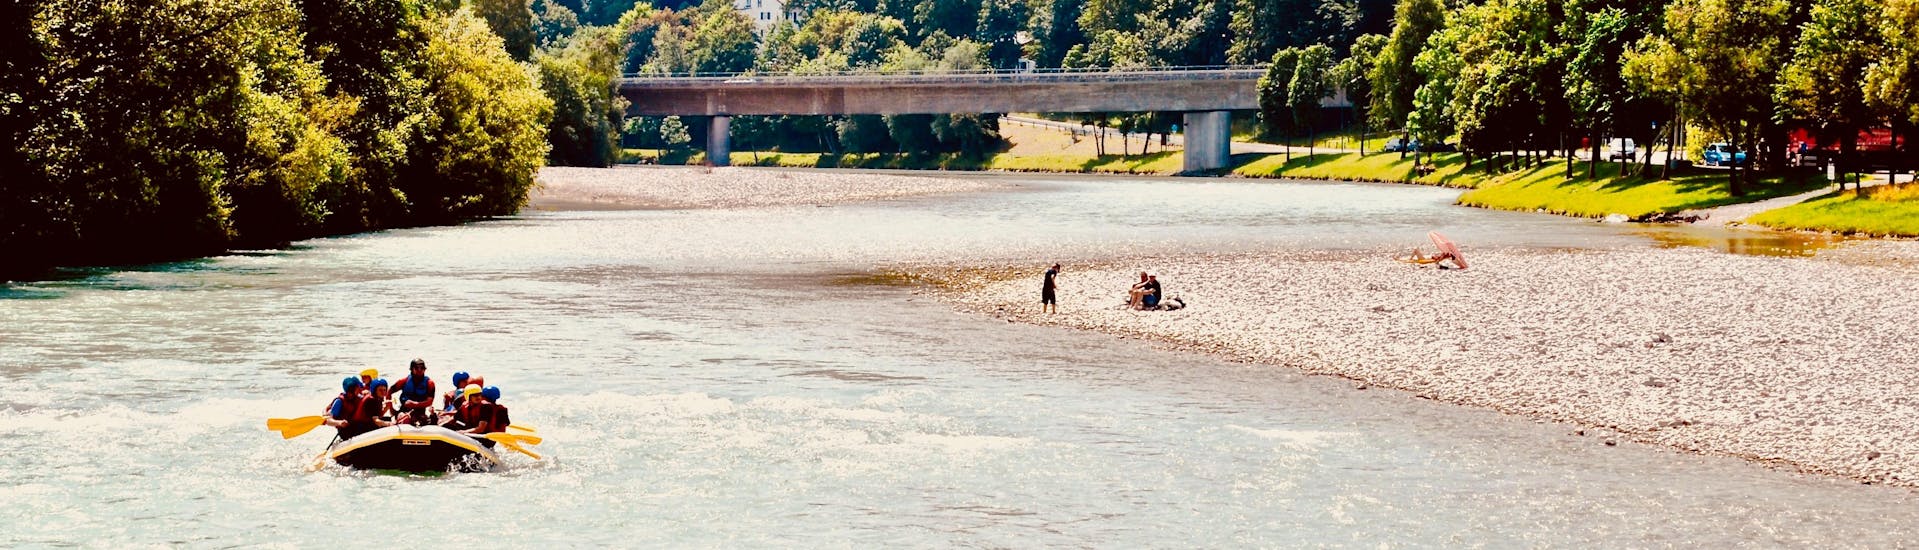 Fluss in Bad Tolz während einer Rafting-Aktivität in Deutschland.